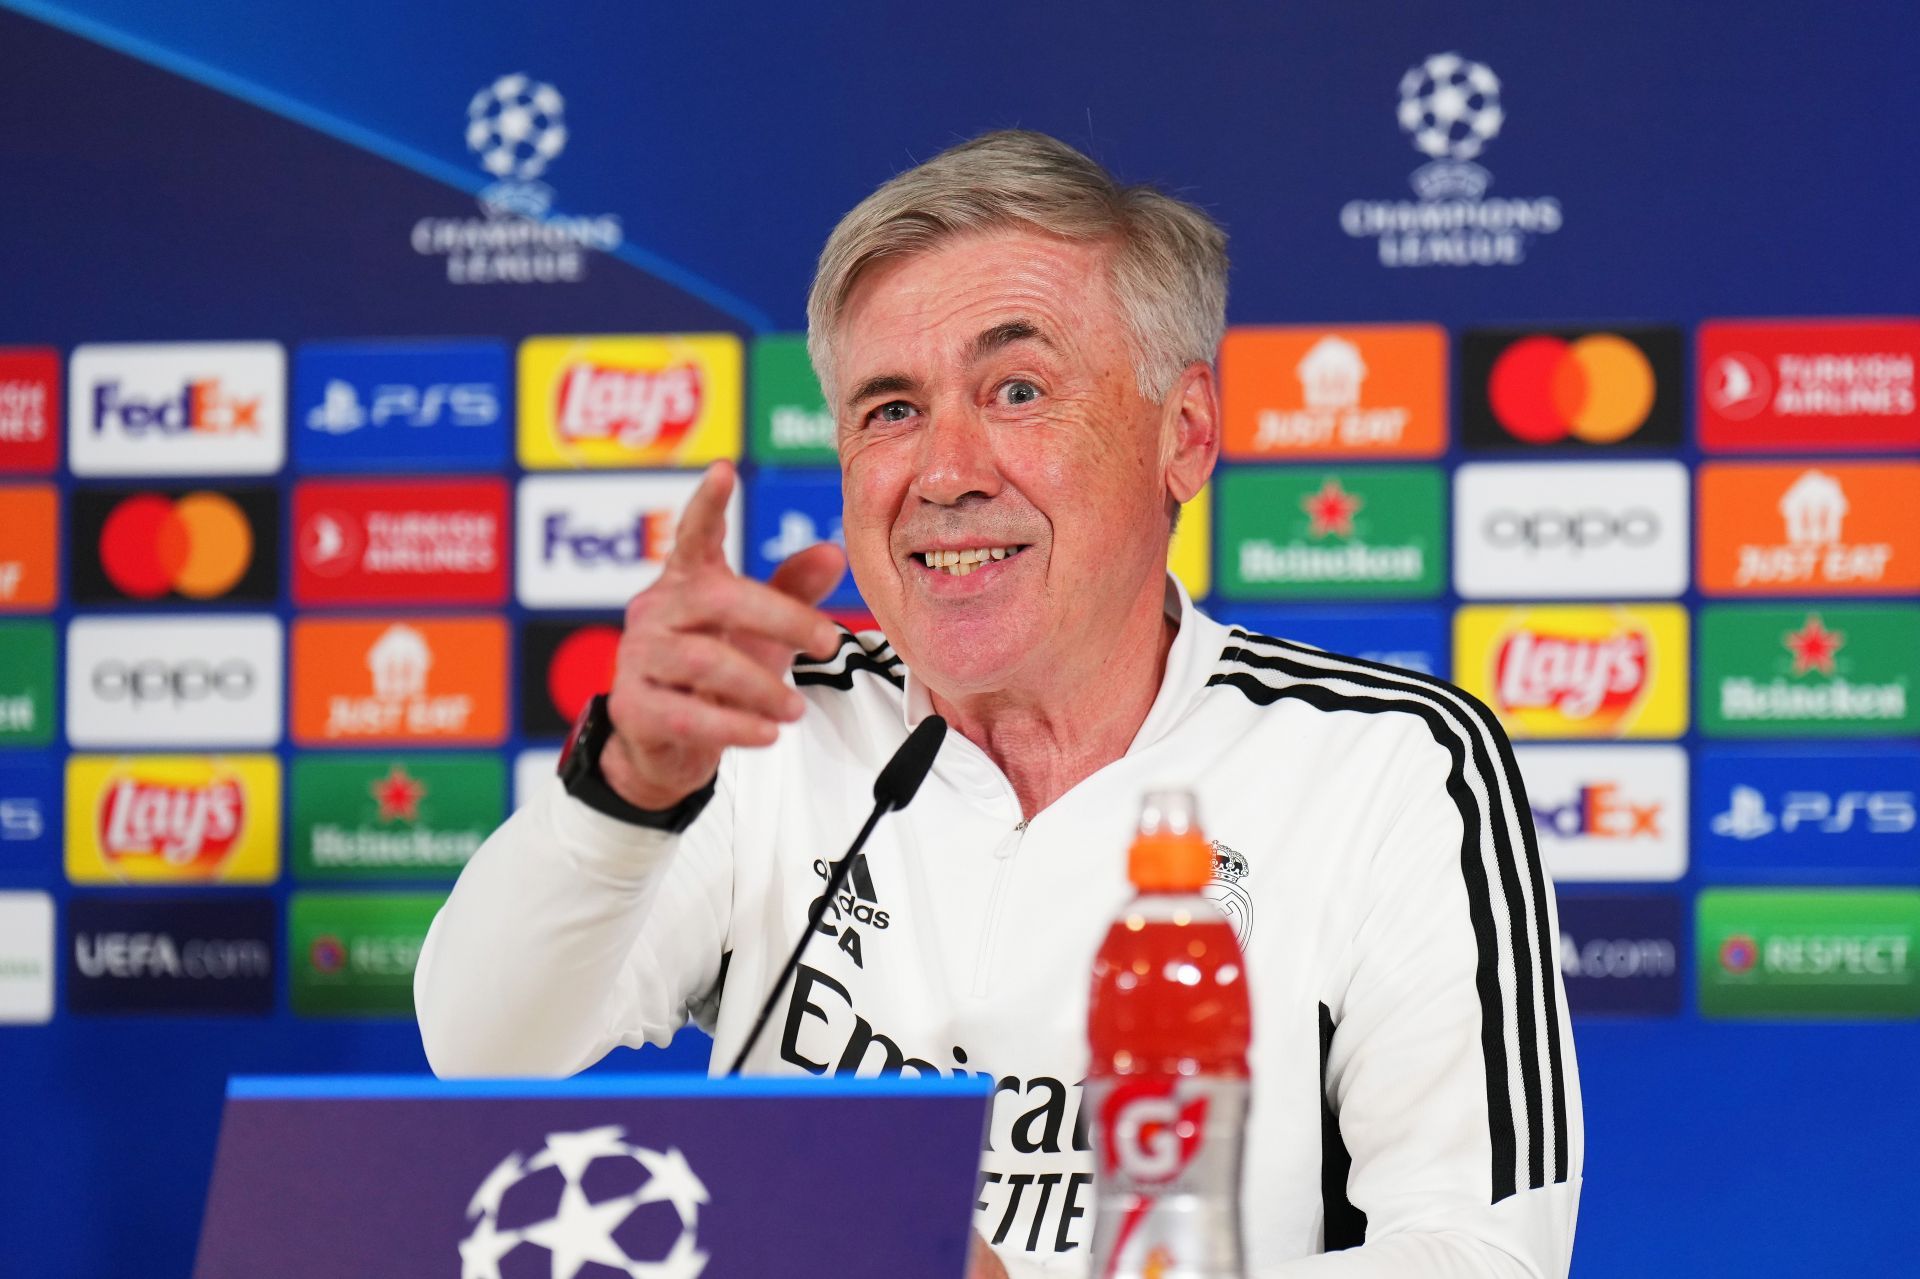 Carlo Ancelotti press conference (via Getty Images)